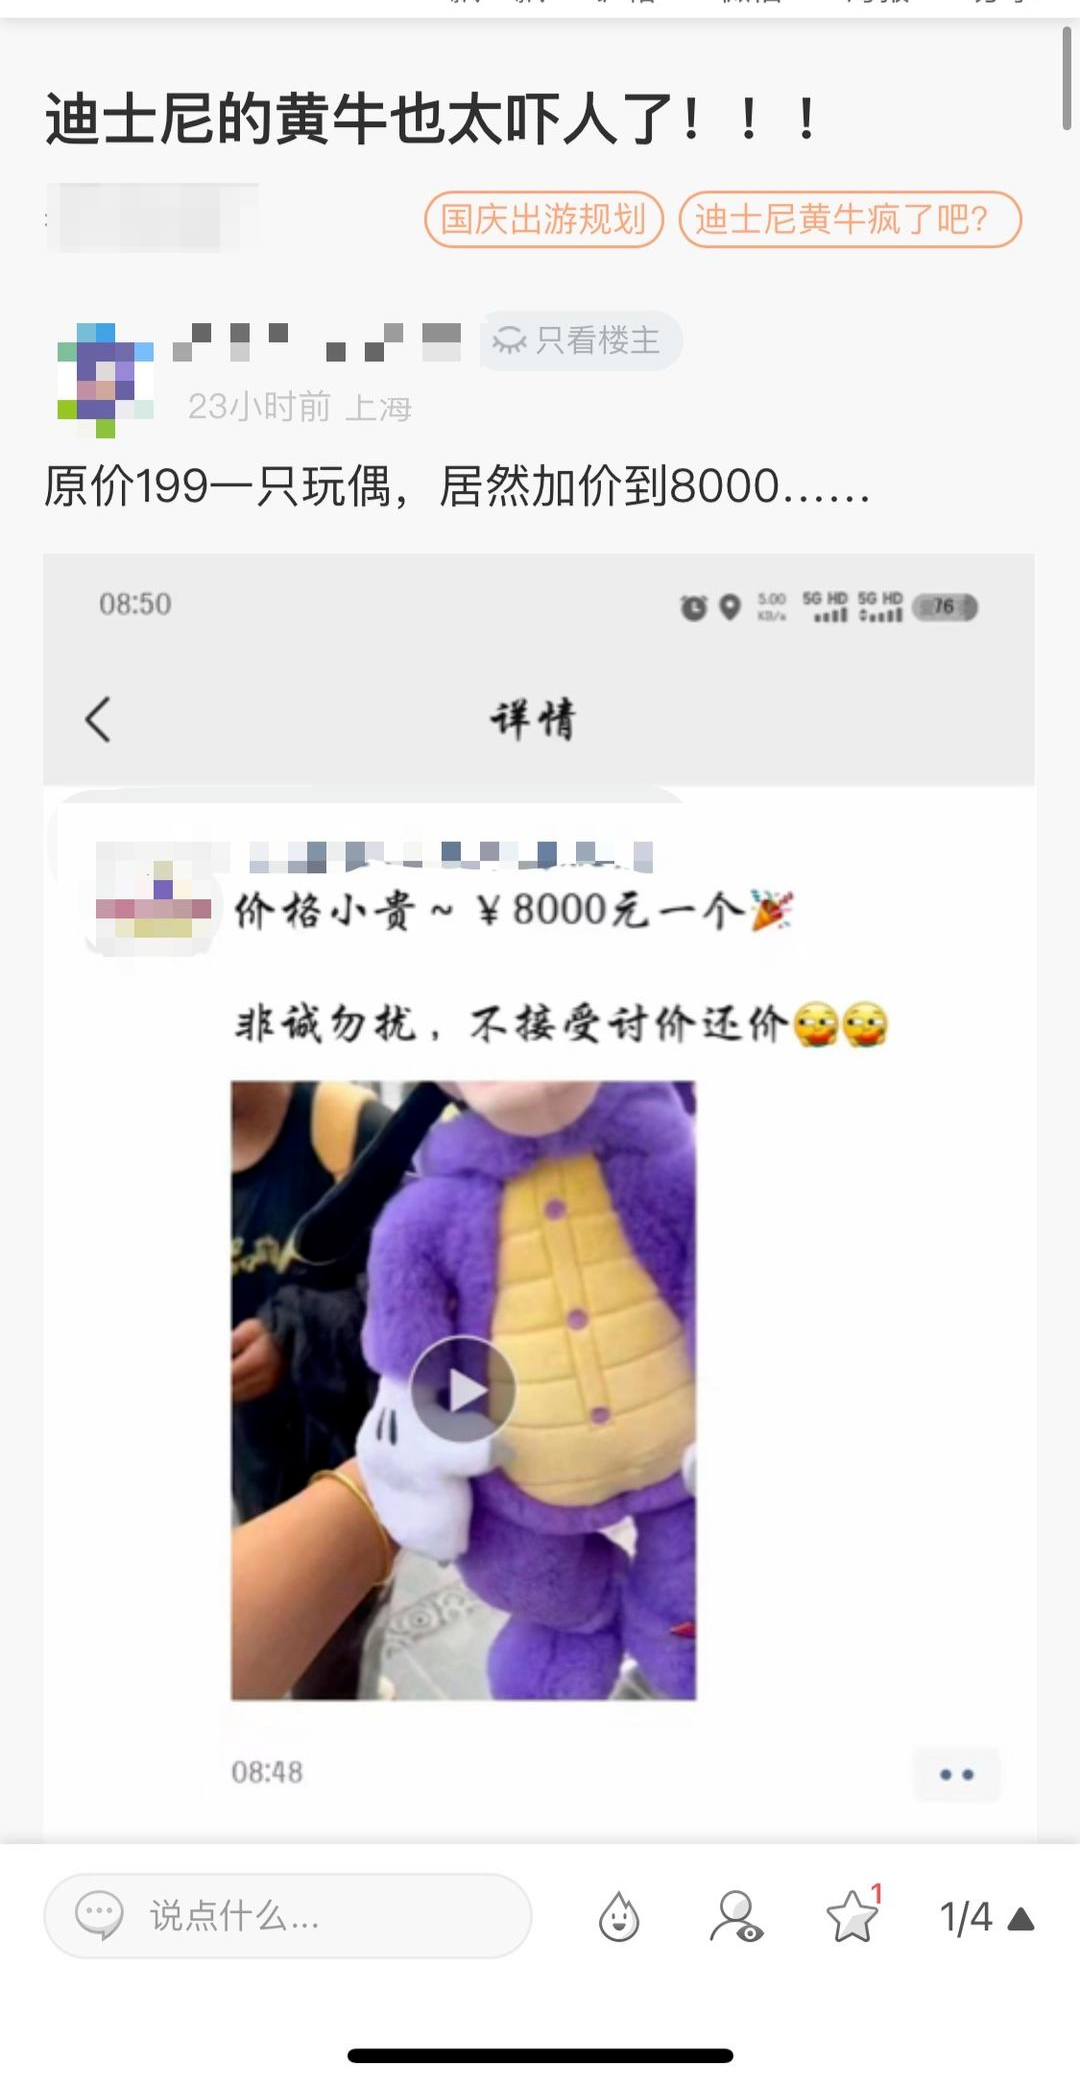 据上海迪士尼度假区官方微博，9月26日起，“米奇和朋友们系列”商品上新。其中，角色高飞推出“紫色的飞龙”衣着商品，包括钥匙圈、毛绒玩具等，被不少爱好者称为“紫龙高飞”